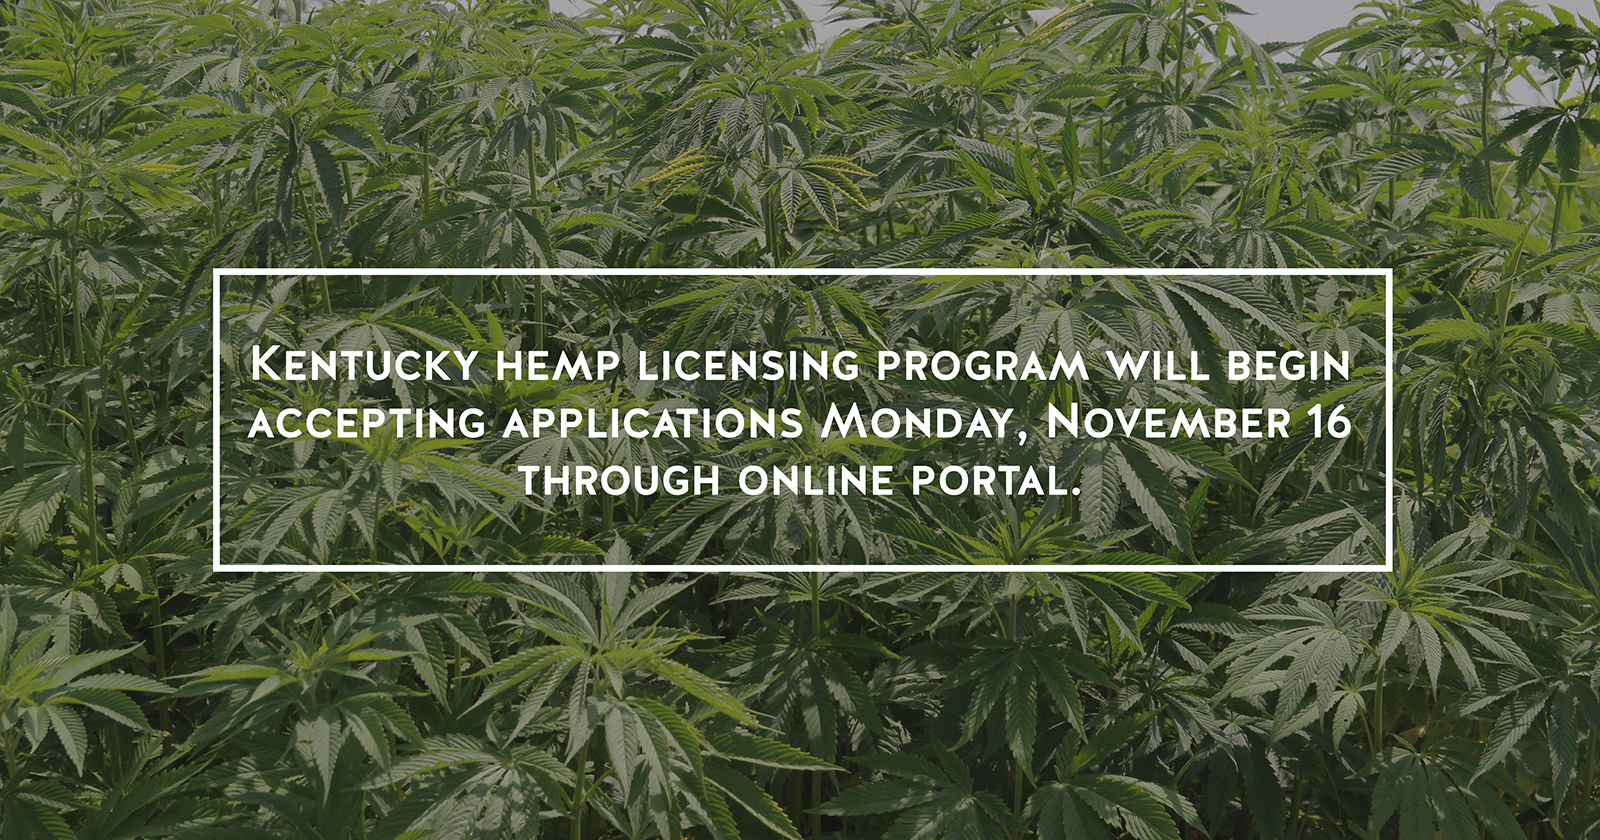 Kentucky hemp application portal